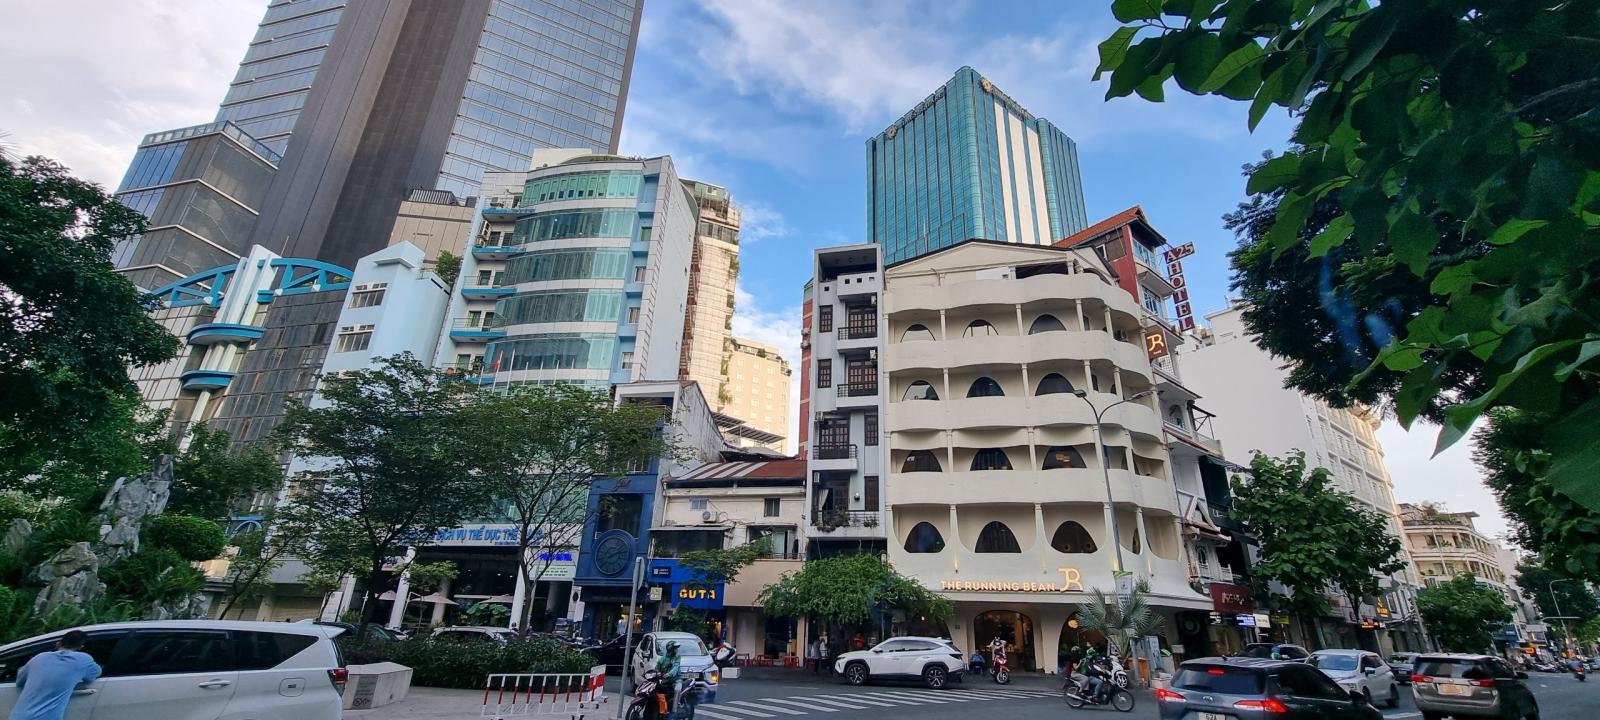 Bán nhà 2 mặt tiền đường Phan Văn Đạt, p.Bến Nghé, Q.1, 12x26, 310m2, giá 340 tỷ TL